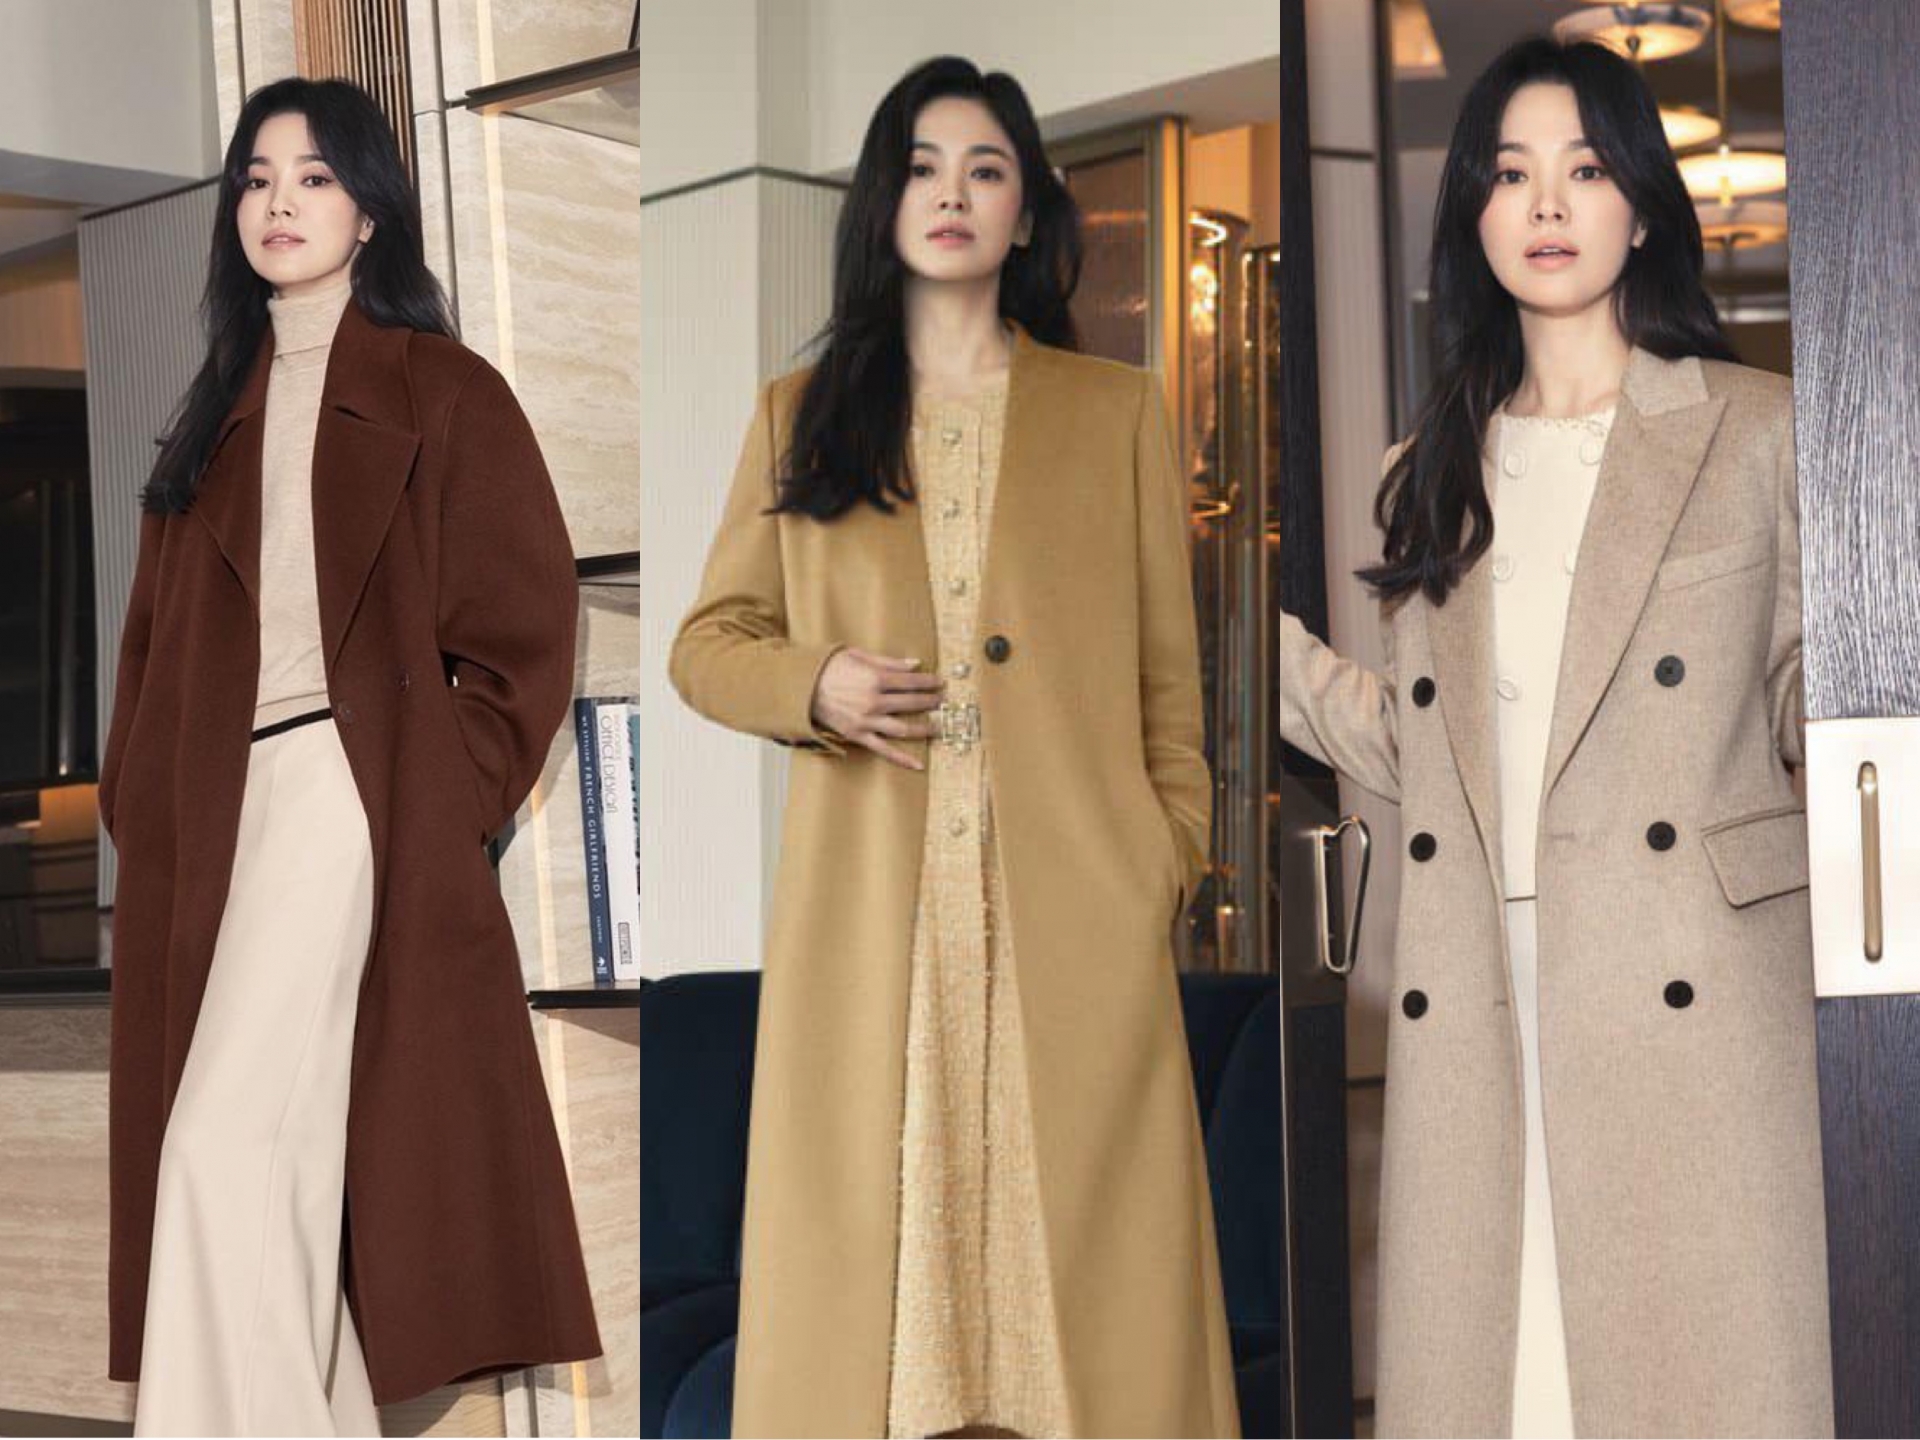 Áo khoác dáng dài là một lựa chọn tối ưu cho mọi cô gái. Trong bộ ảnh này, Song Hye Kyo cũng lựa chọn áo trench coat có màu sắc trung tính và phom dáng cứng cáp. Khi mix cùng váy dạ hoặc áo len, chân váy đồng màu sẽ tạo nên tổng thể hài hoà.